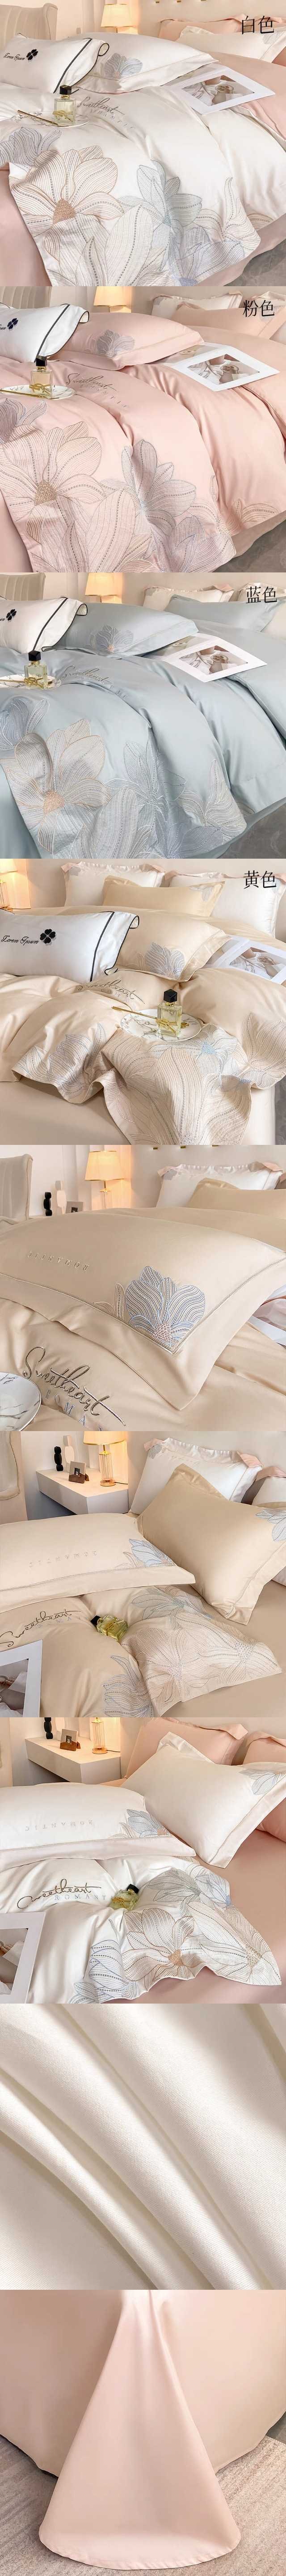 【中国直邮】Lullabuy 赫本风刺绣80支长绒棉四件套 床上用品床单被套枕套(床单*1+被套*1+枕套*2)  白色 Queen Size